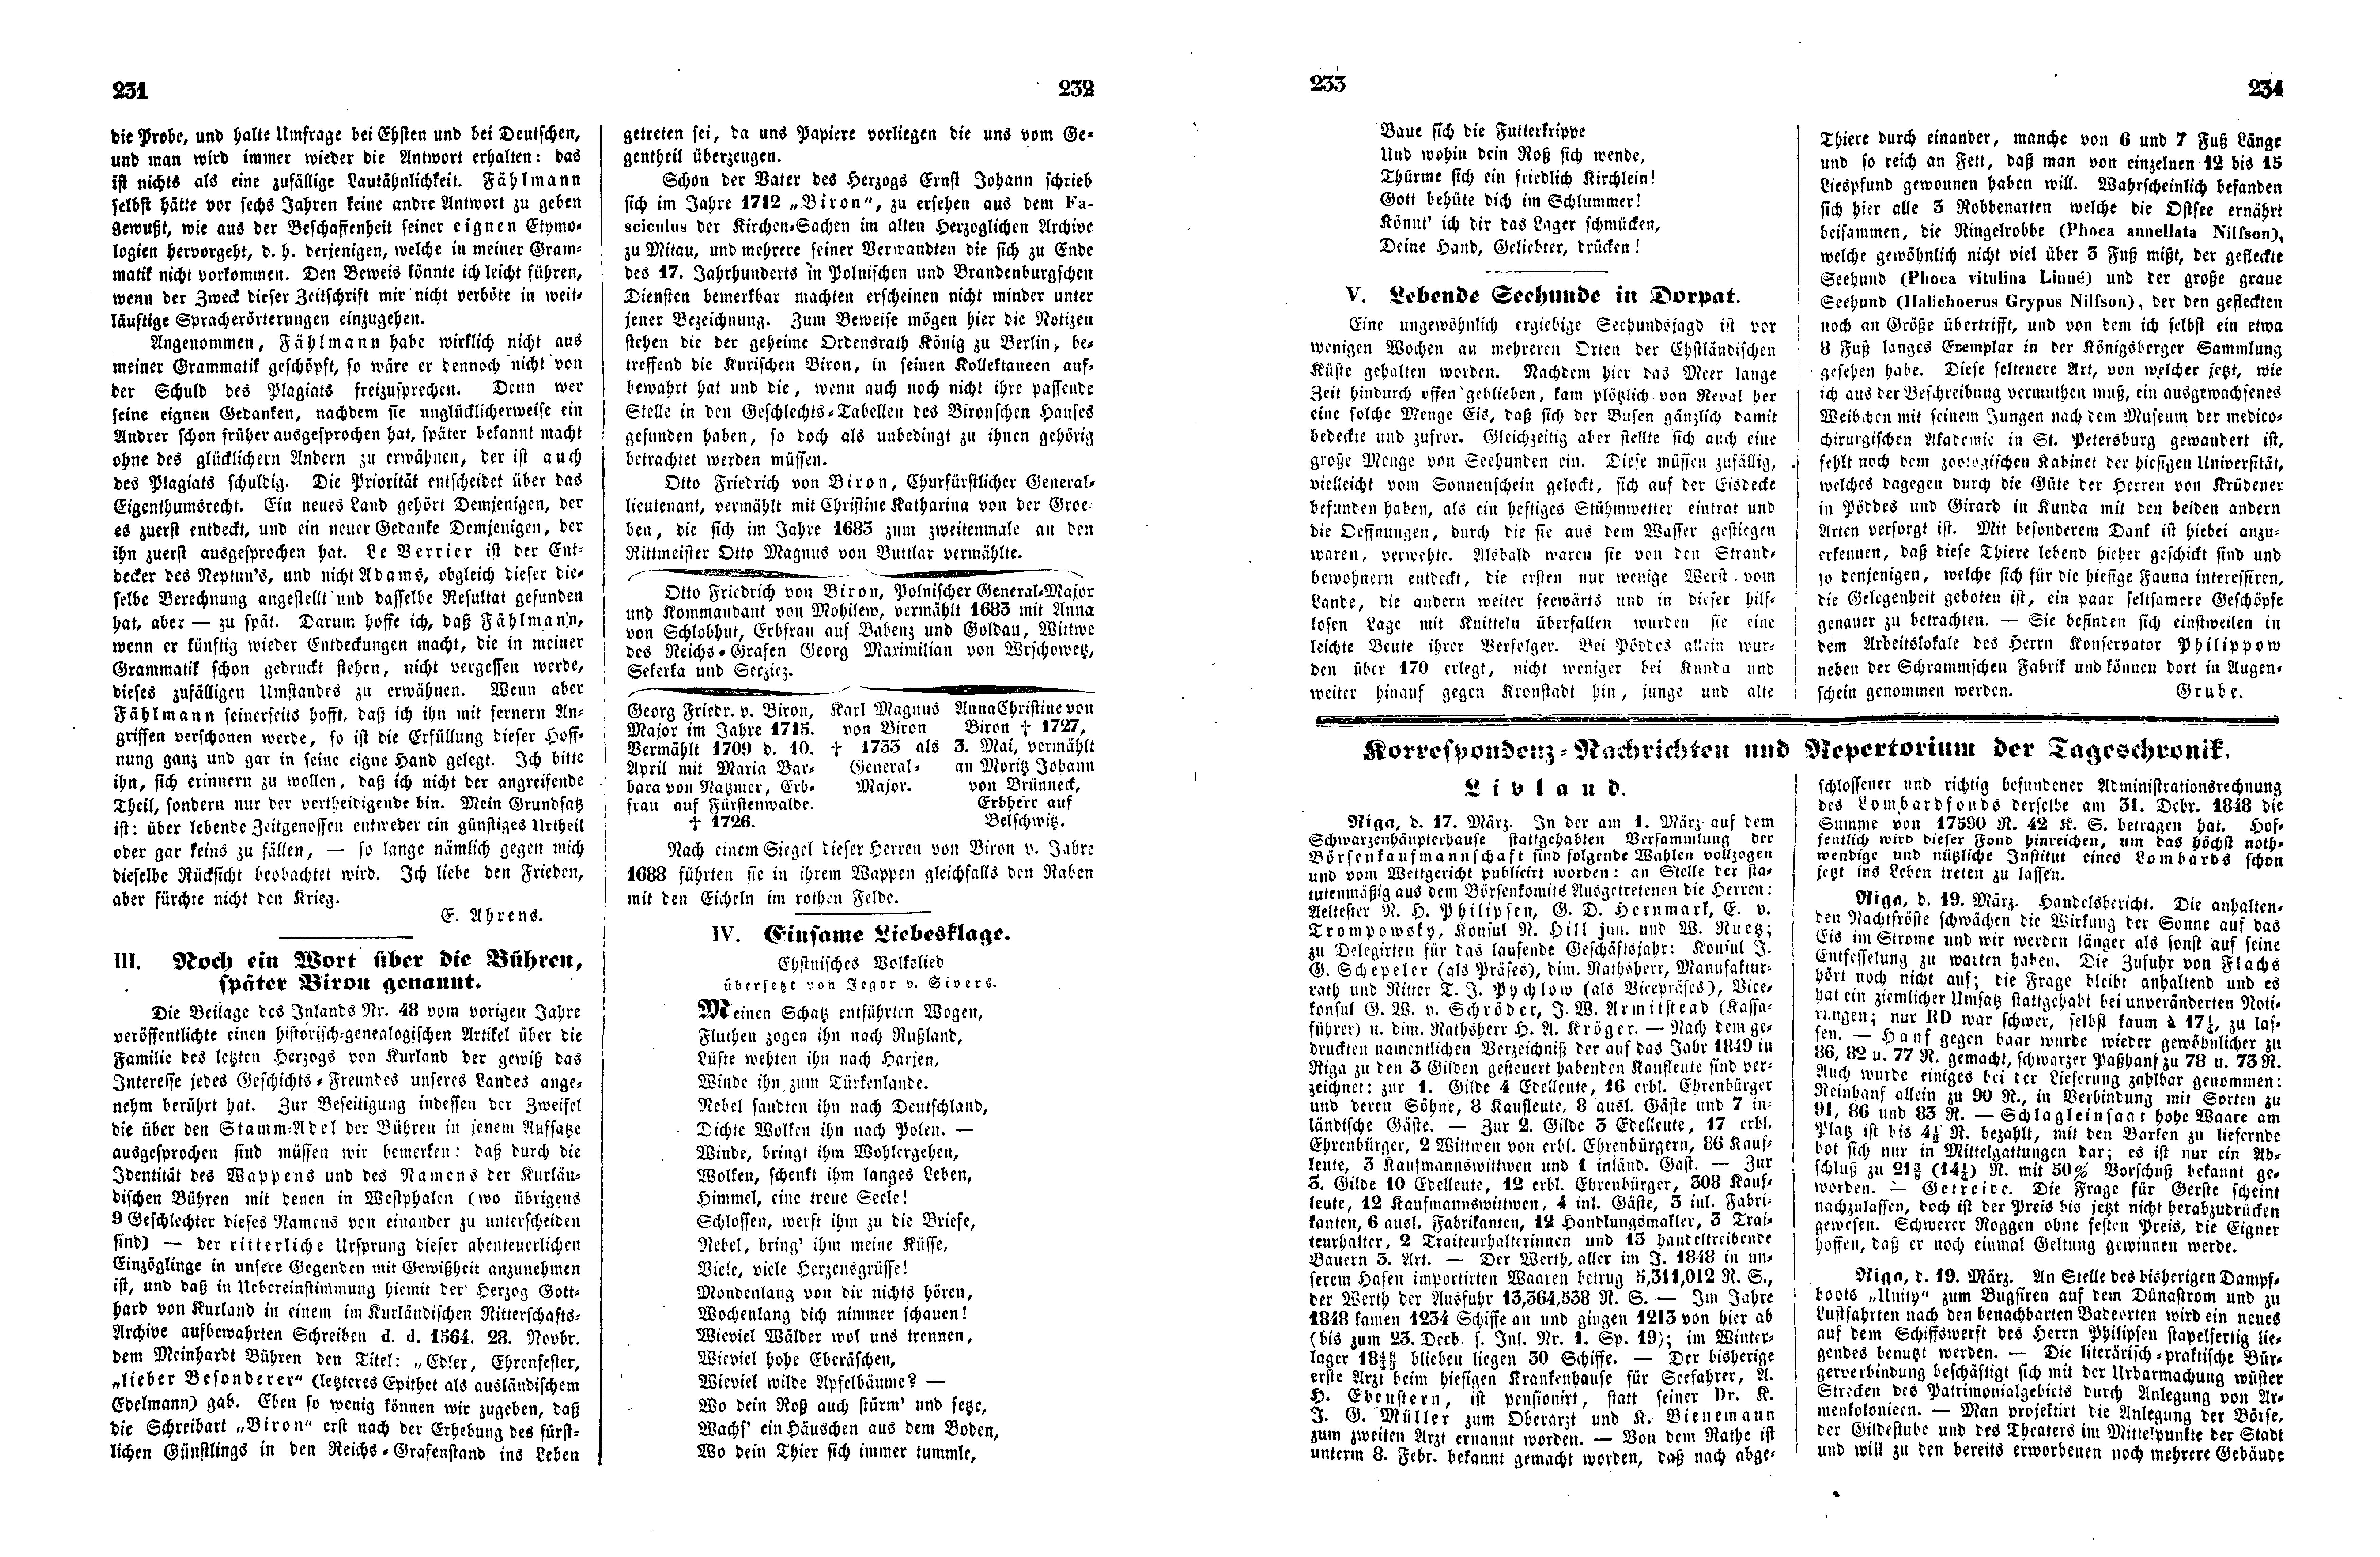 Einsame Liebesklage (1849) | 1. (231-234) Main body of text